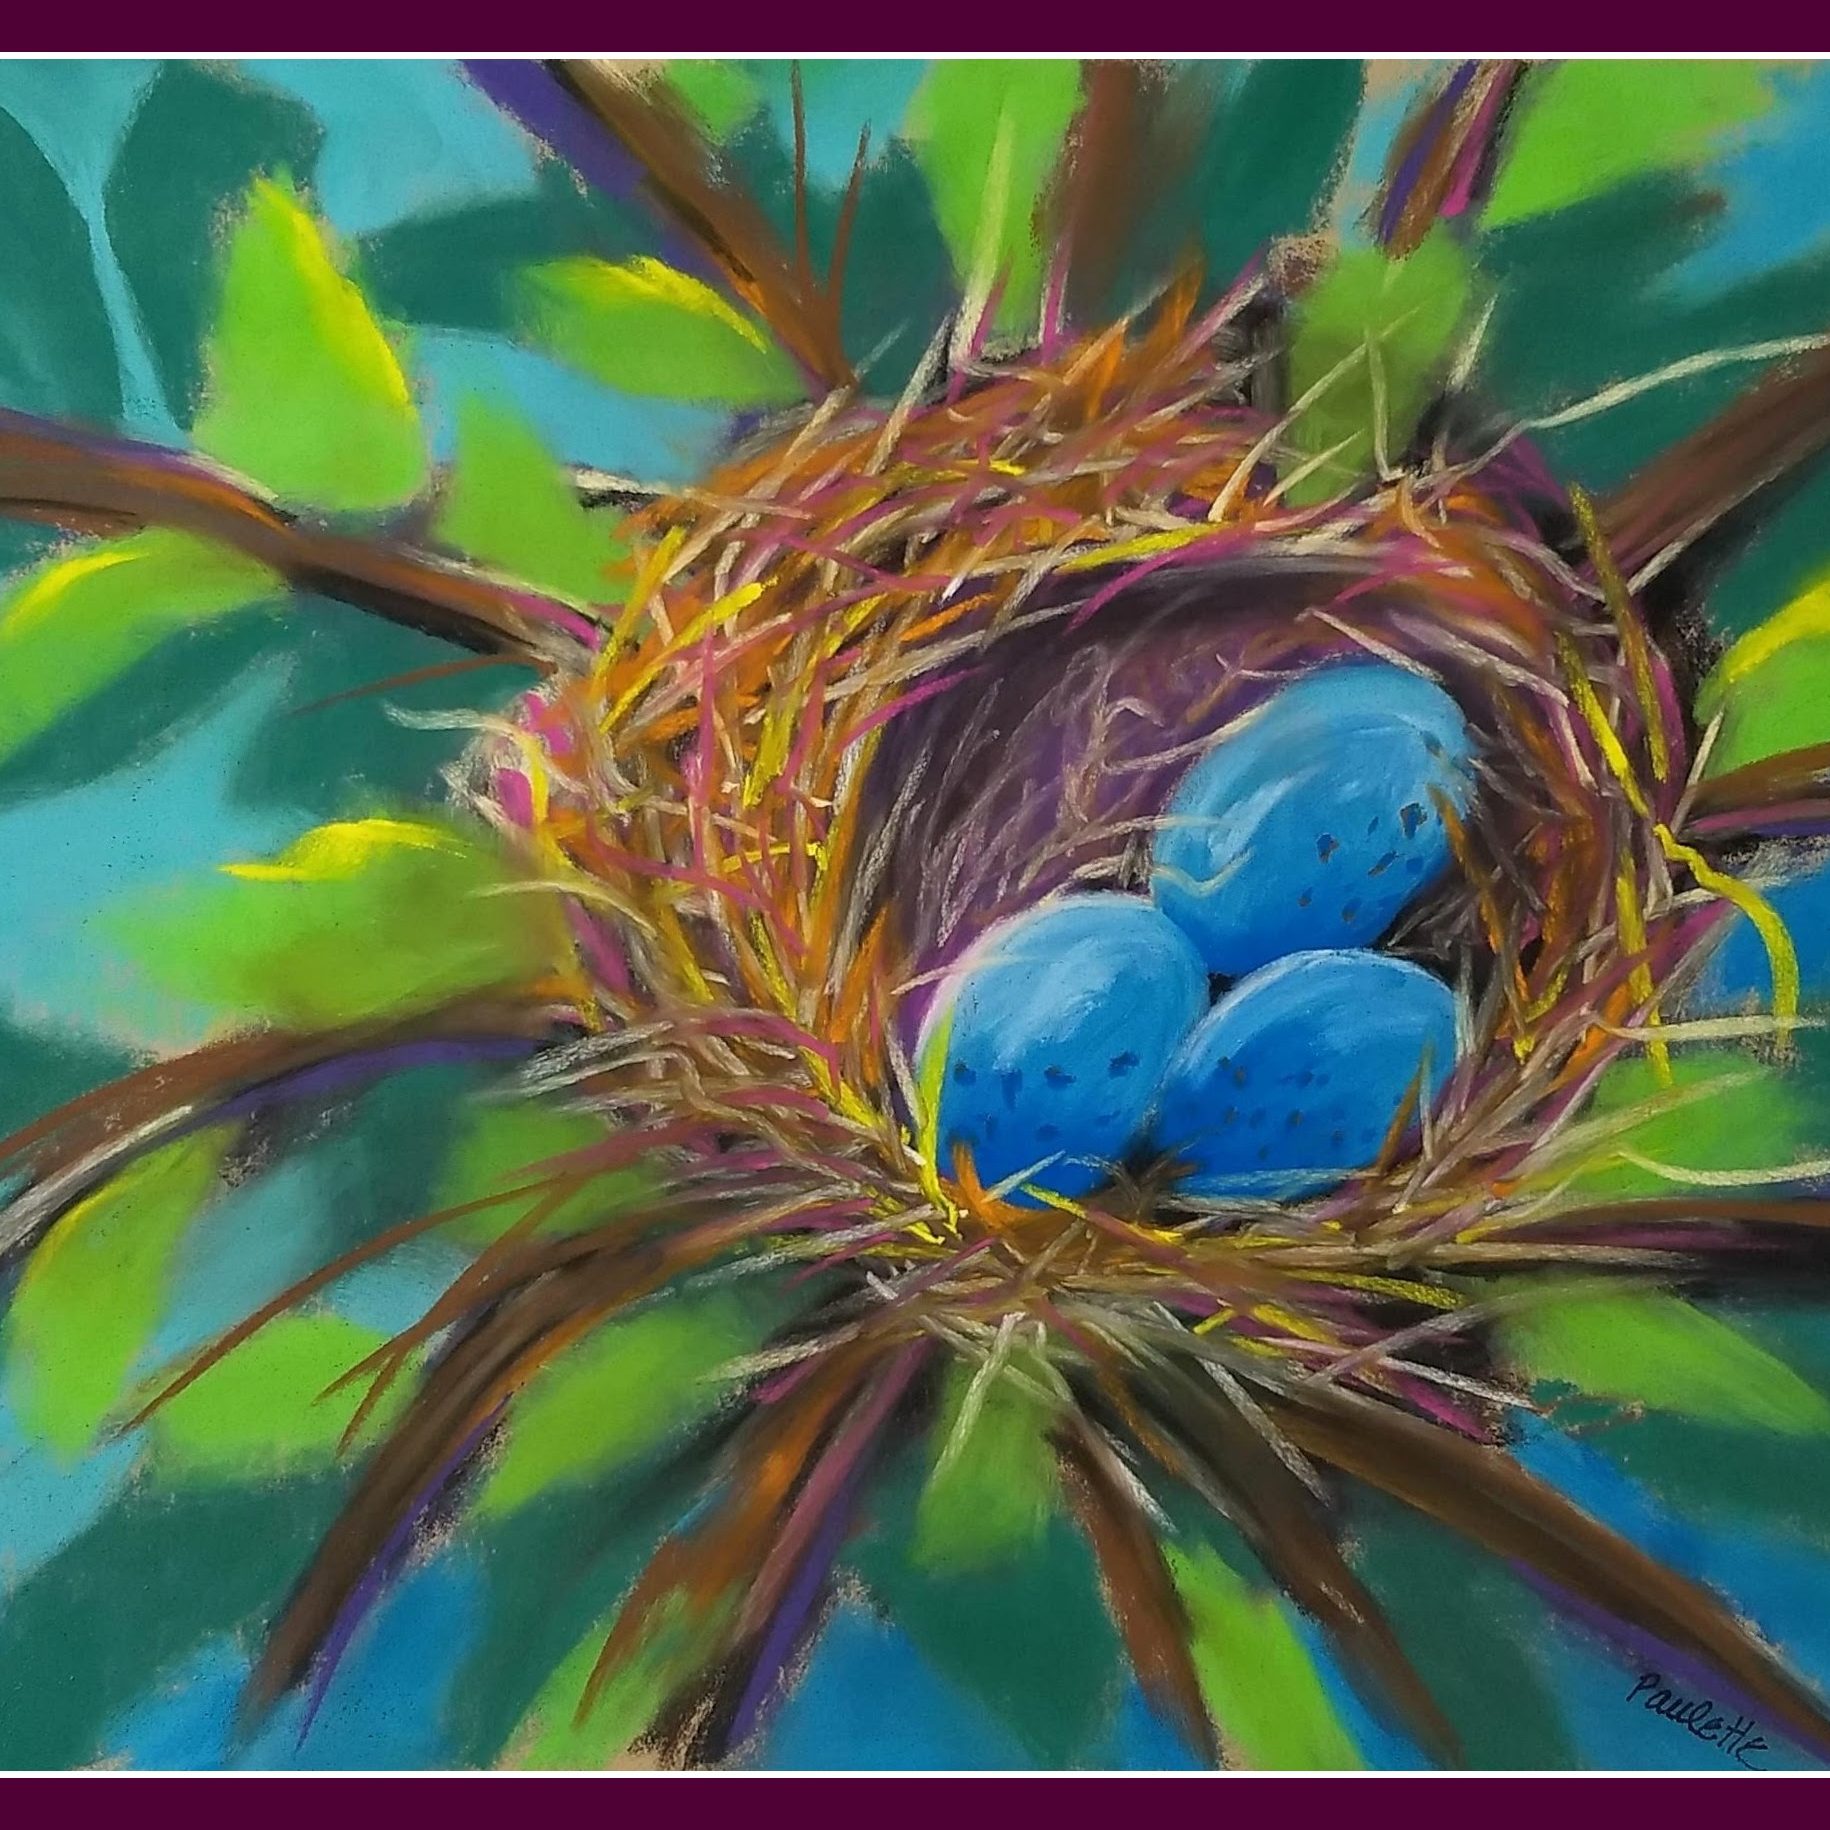 PauletteToddbird nest #2 for art of soul